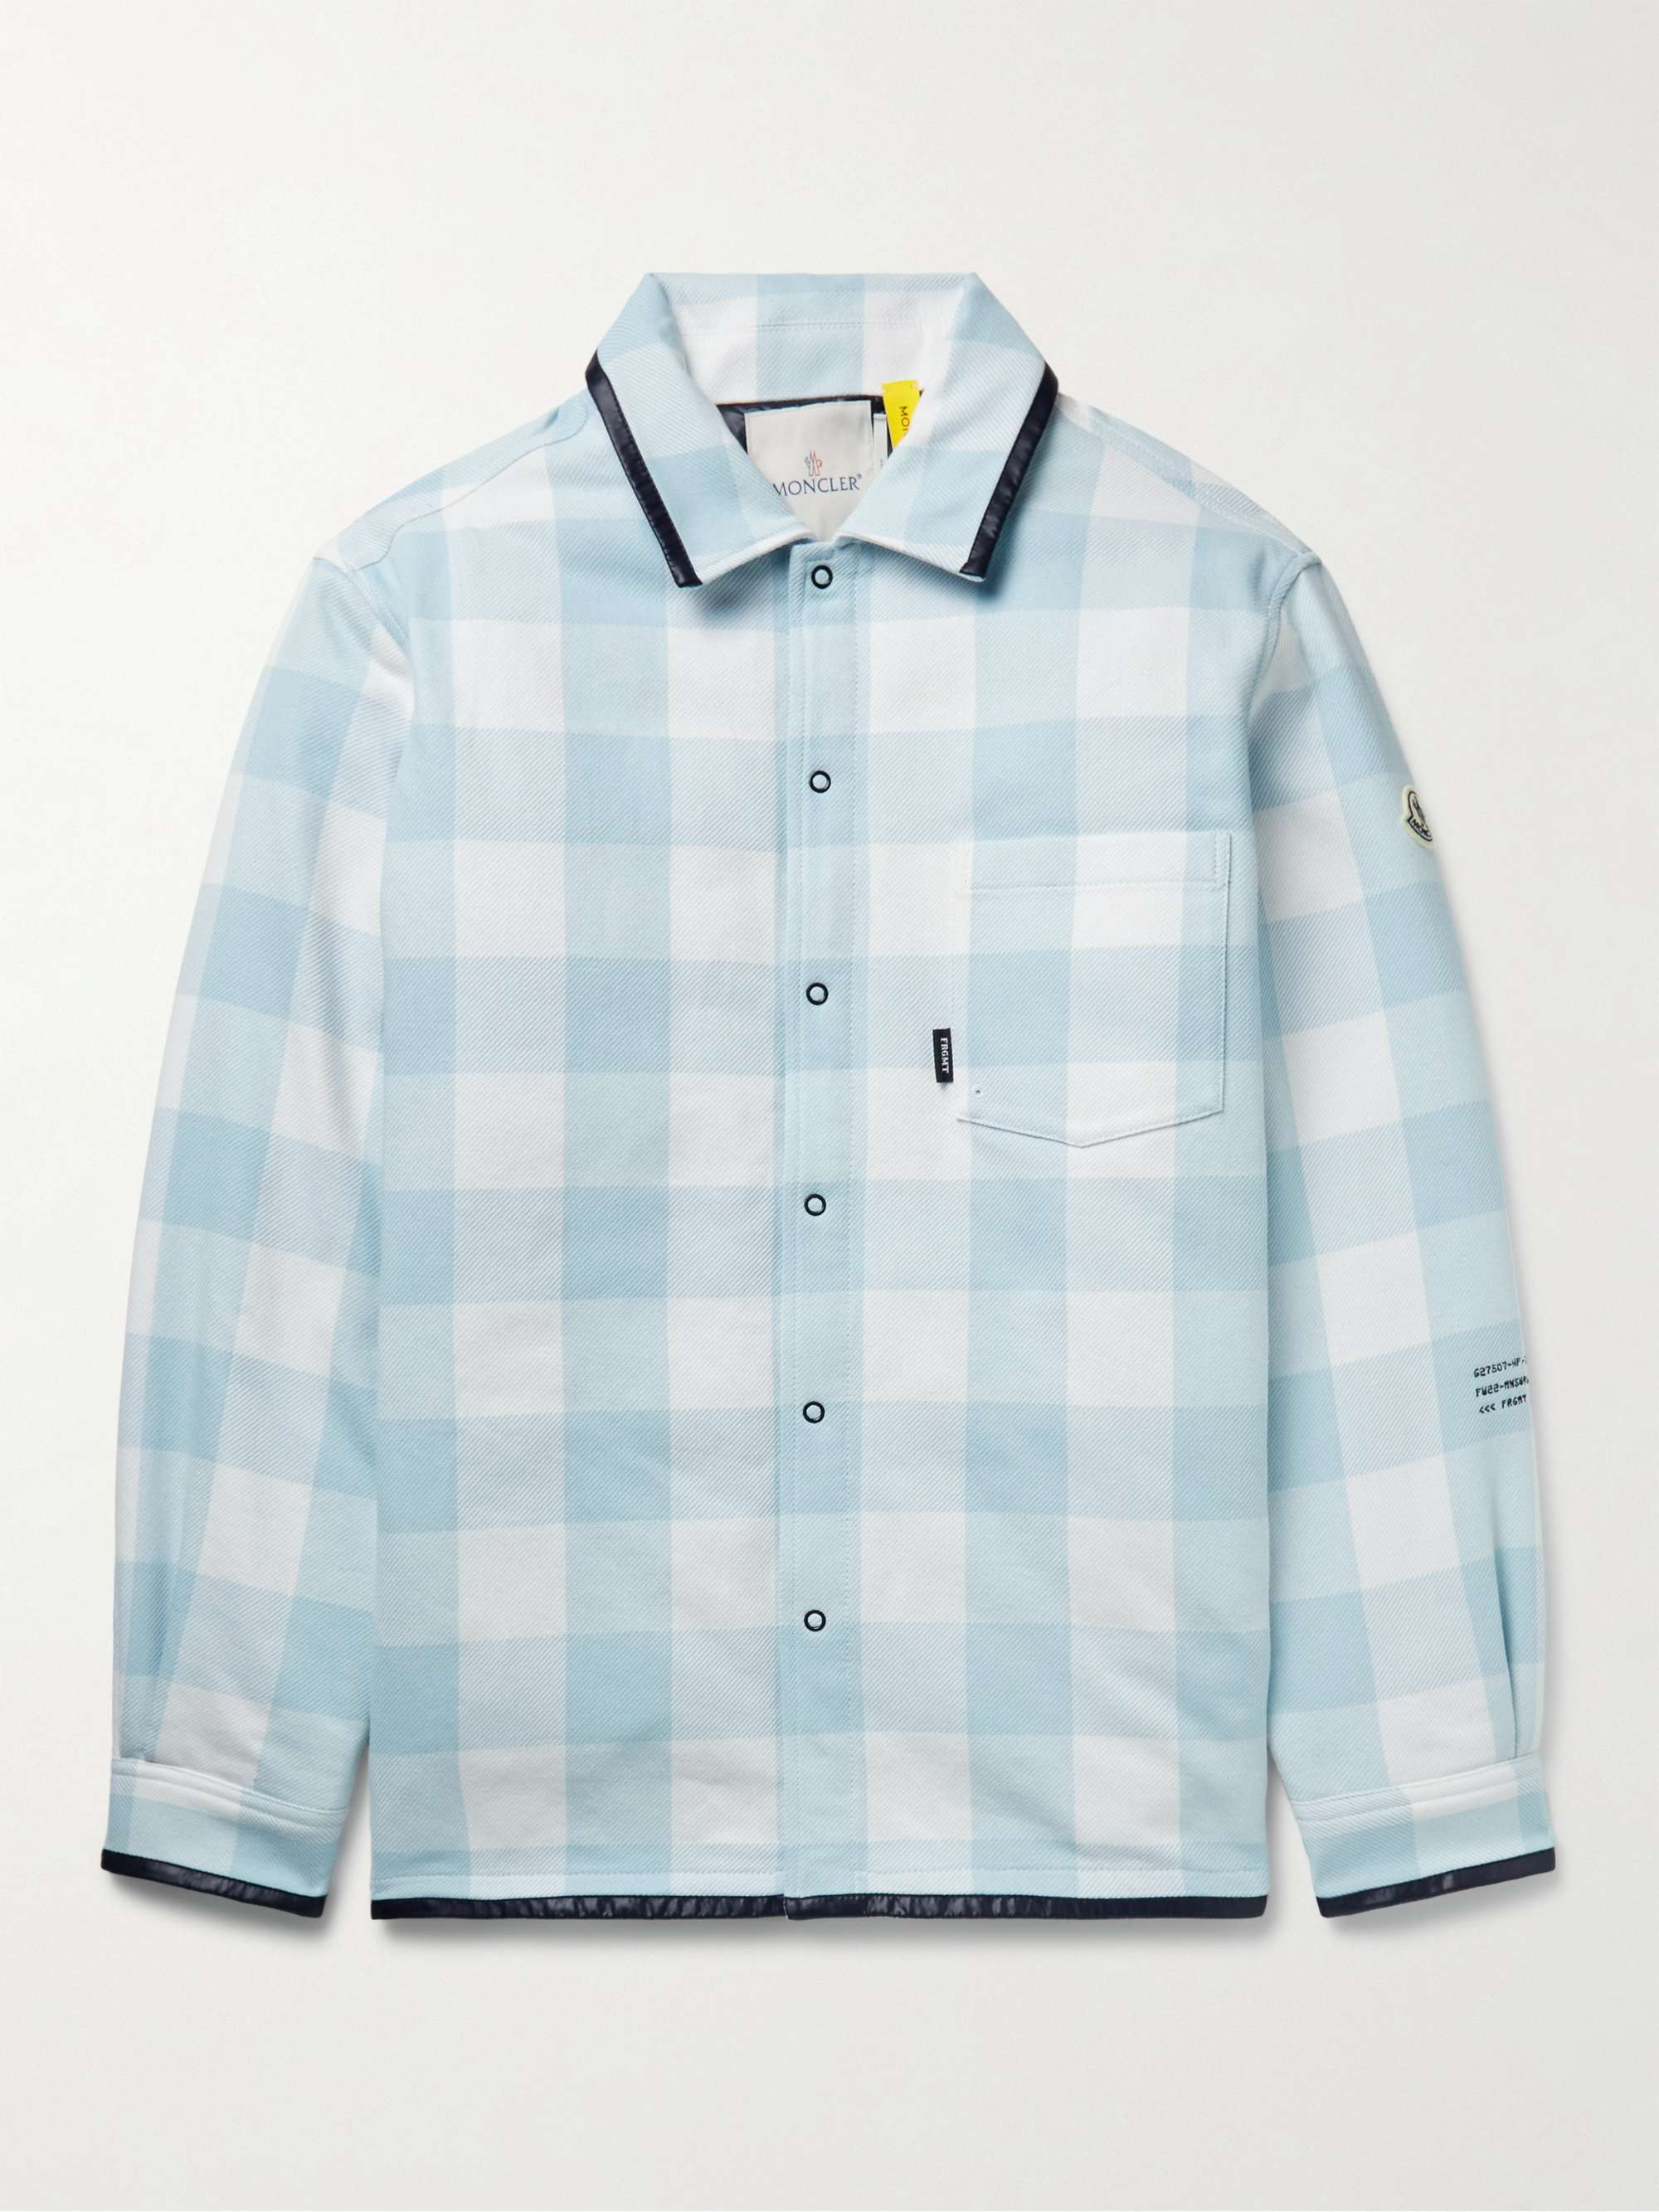 MONCLER GENIUS 7 Moncler FRGMT Hiroshi Fujiwara Checked Cotton Down Shirt  Jacket for Men | MR PORTER